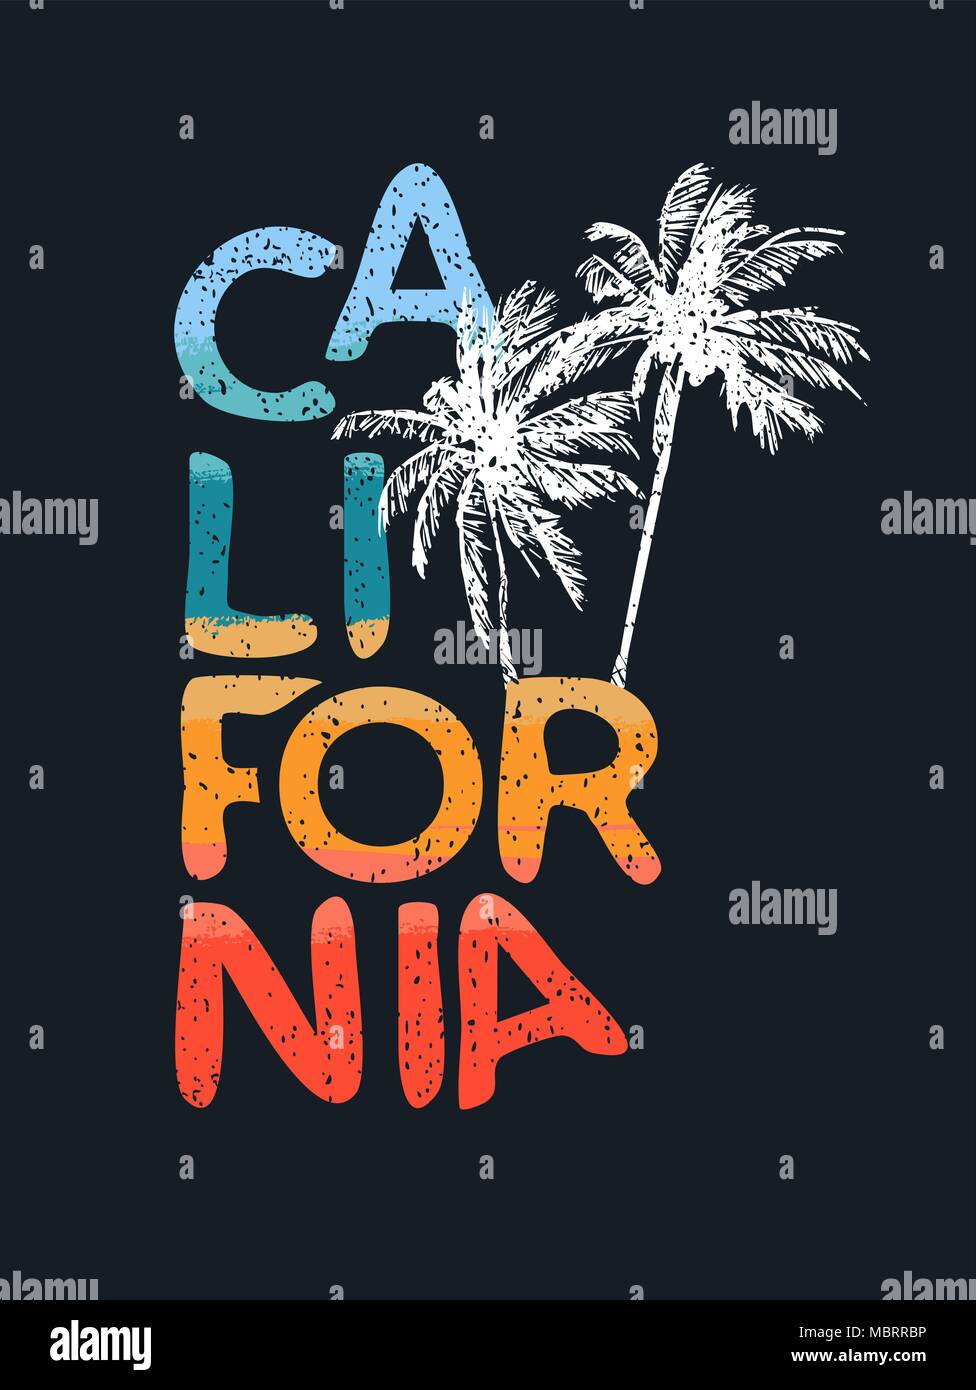 California Vintage typographie devis avec grunge texture et palmiers dessinés à la main. Texte d'été design calligraphie idéal pour imprimer, carte ou usage textile Illustration de Vecteur